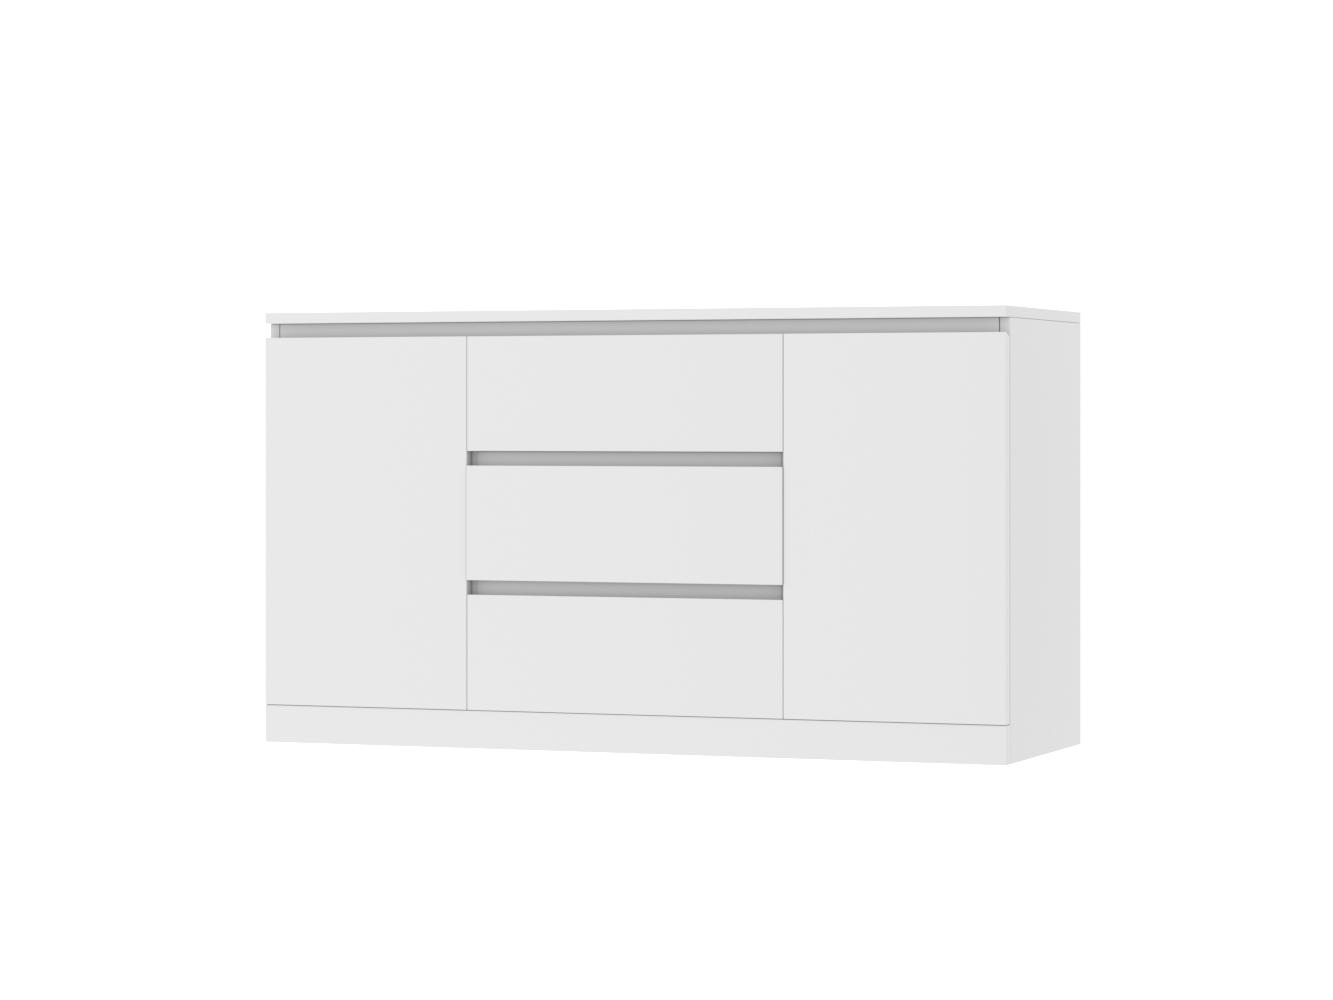 Комод Мальм 25 white ИКЕА (IKEA) изображение товара